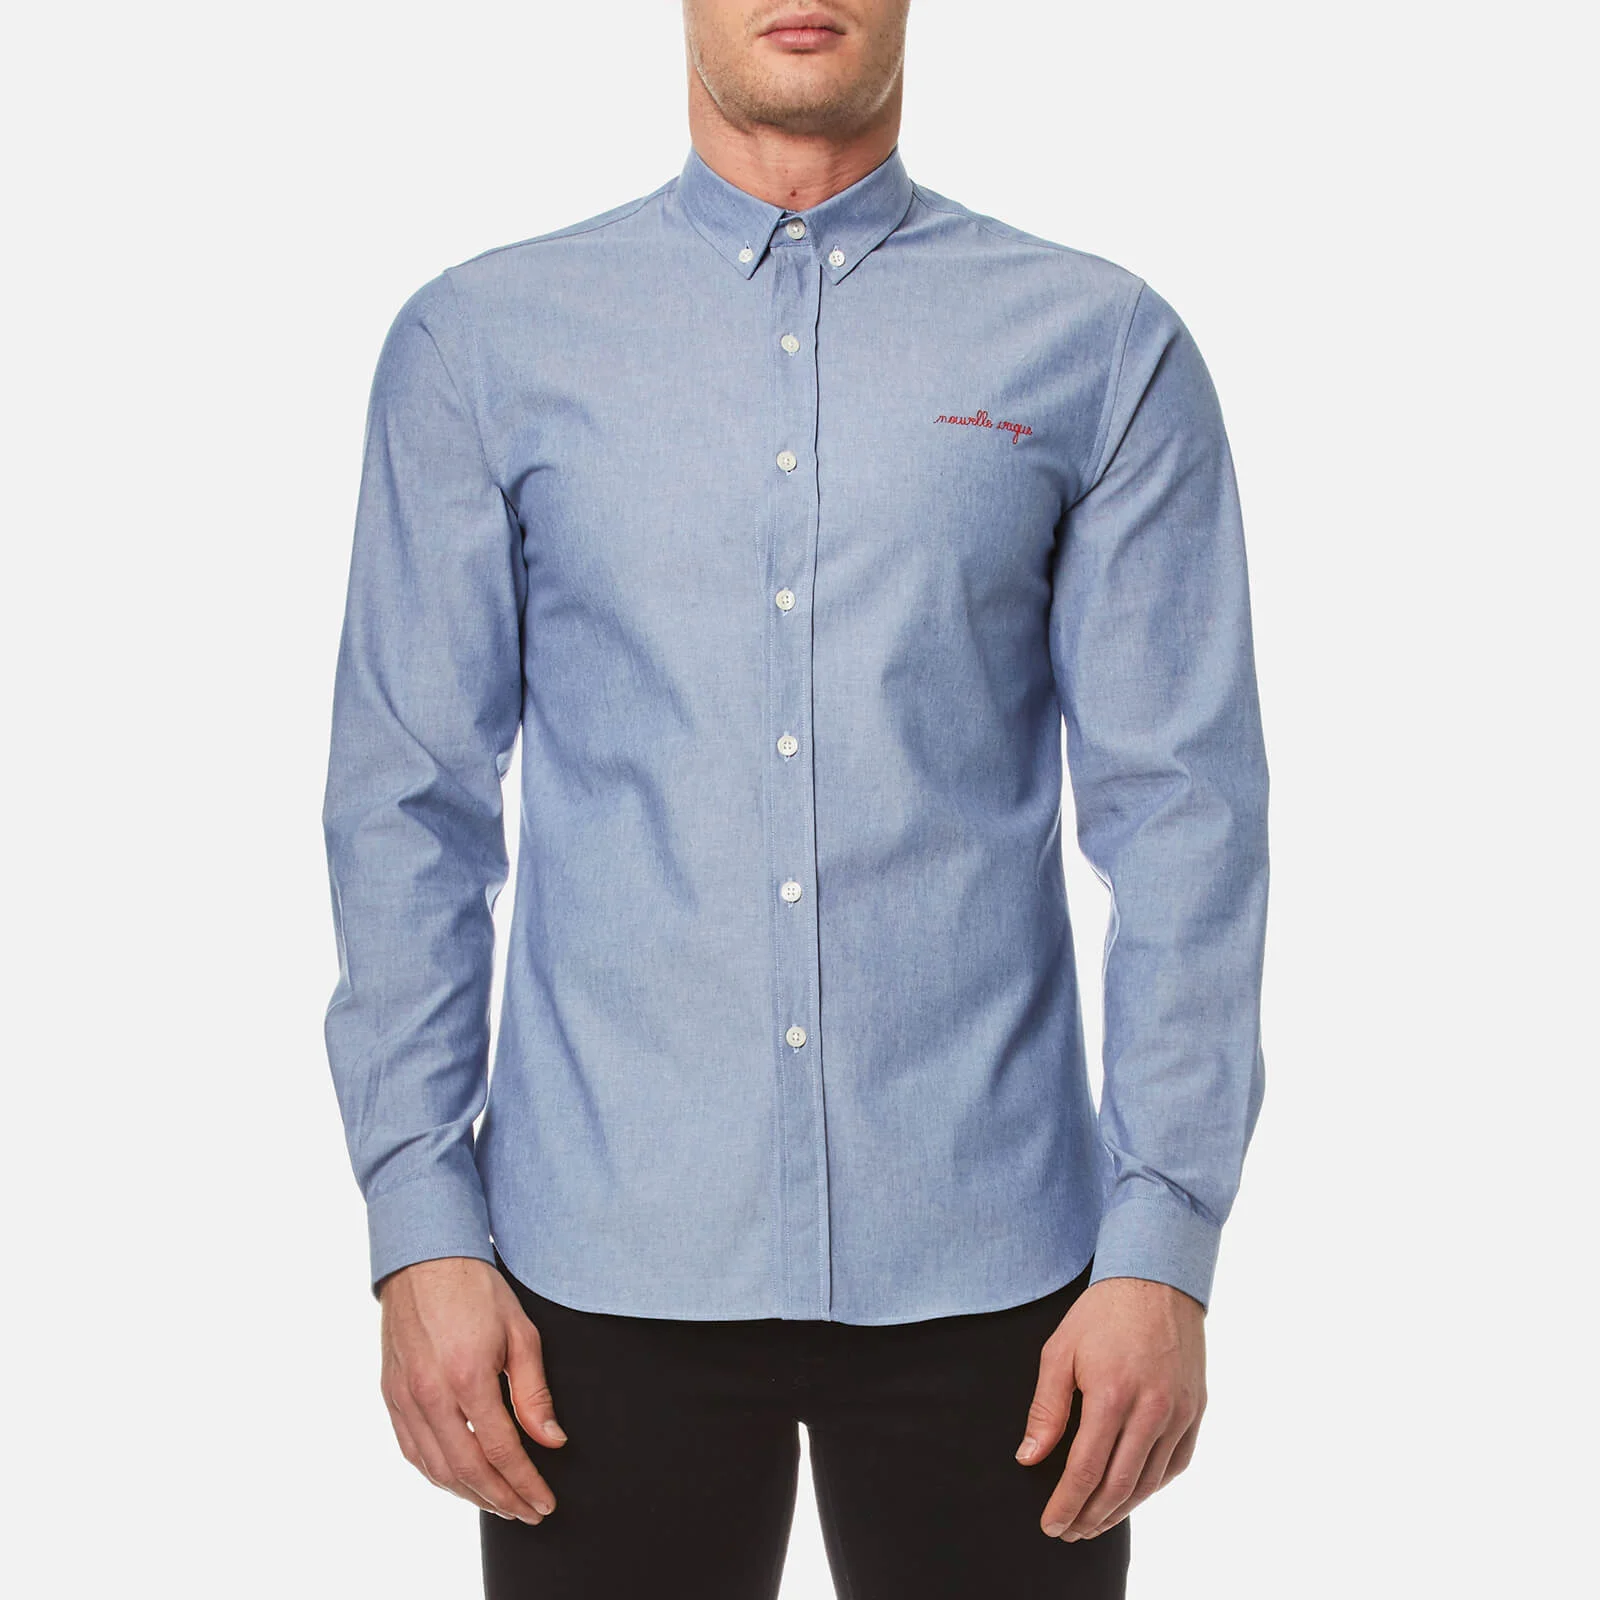 Maison Labiche Men's Nouvelle Vague Long Sleeve Shirt - Summer Blue Image 1